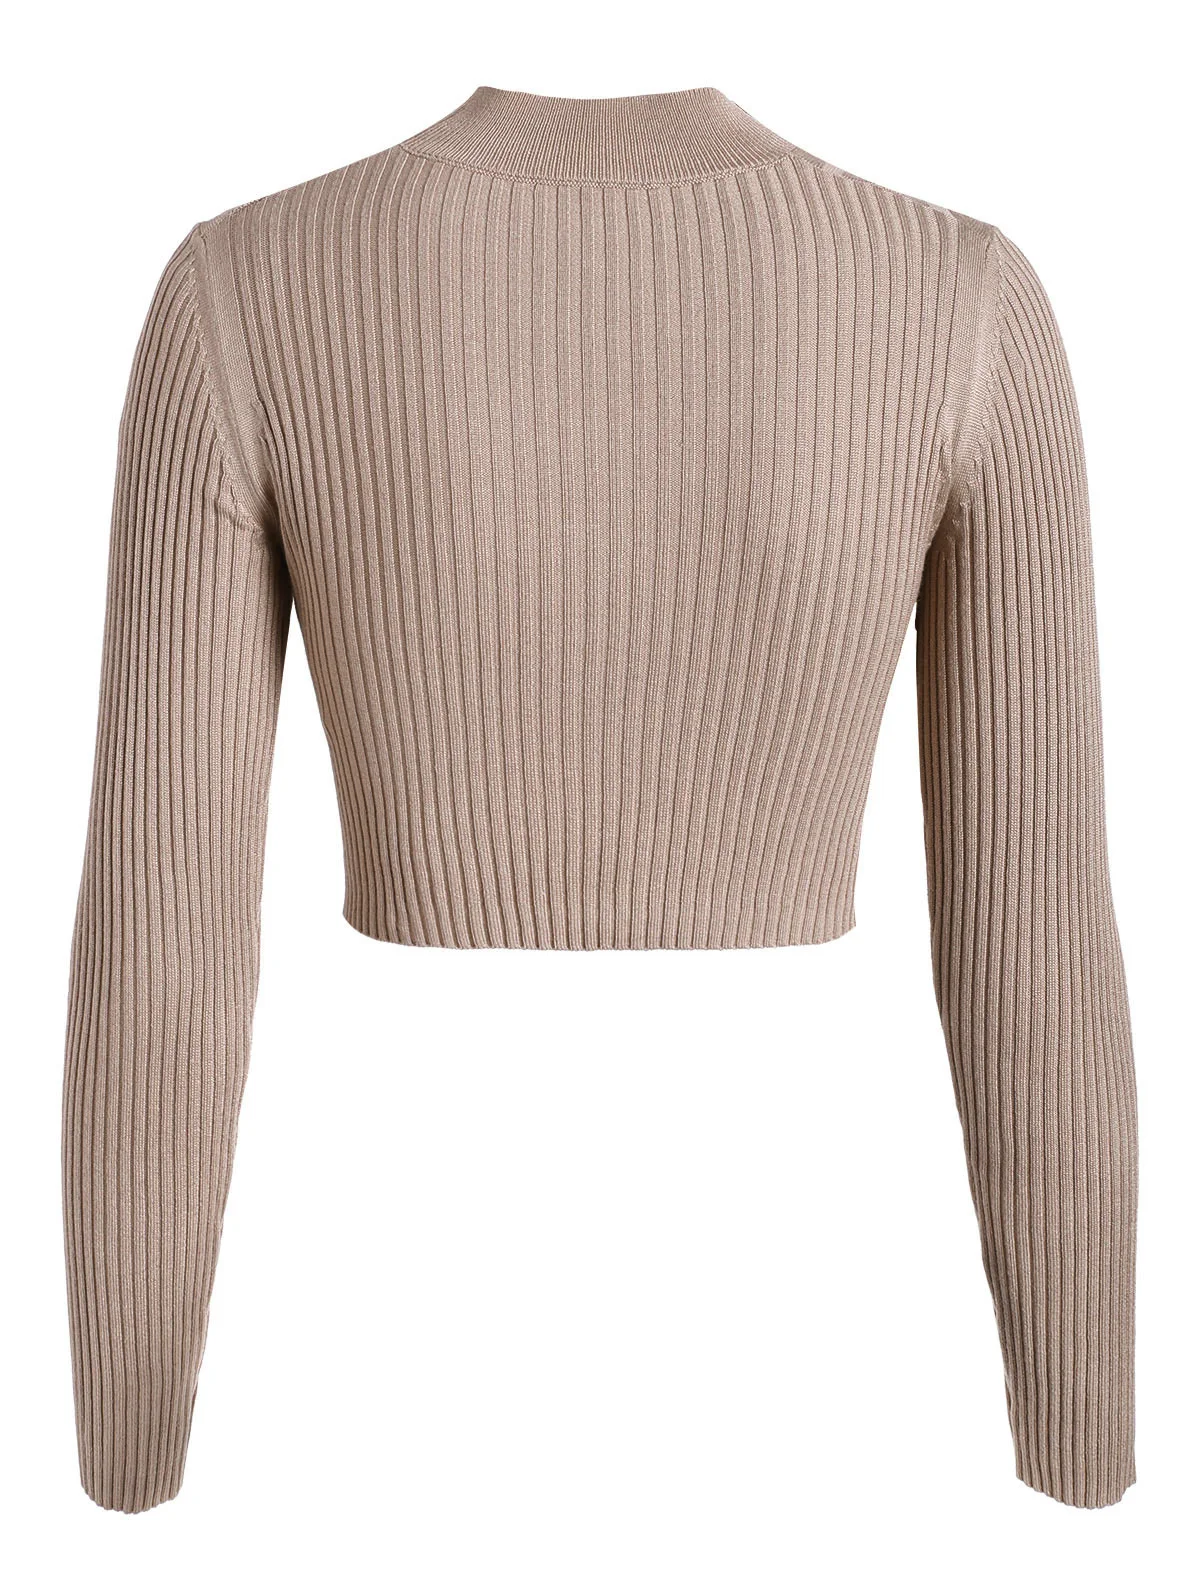 ZAFUL женский укороченный пуловер с перекрещивающимися крест-накрест, свитер, водолазка с глубоким v-образным вырезом и вырезами, топы с длинным рукавом, короткий однотонный пуловер